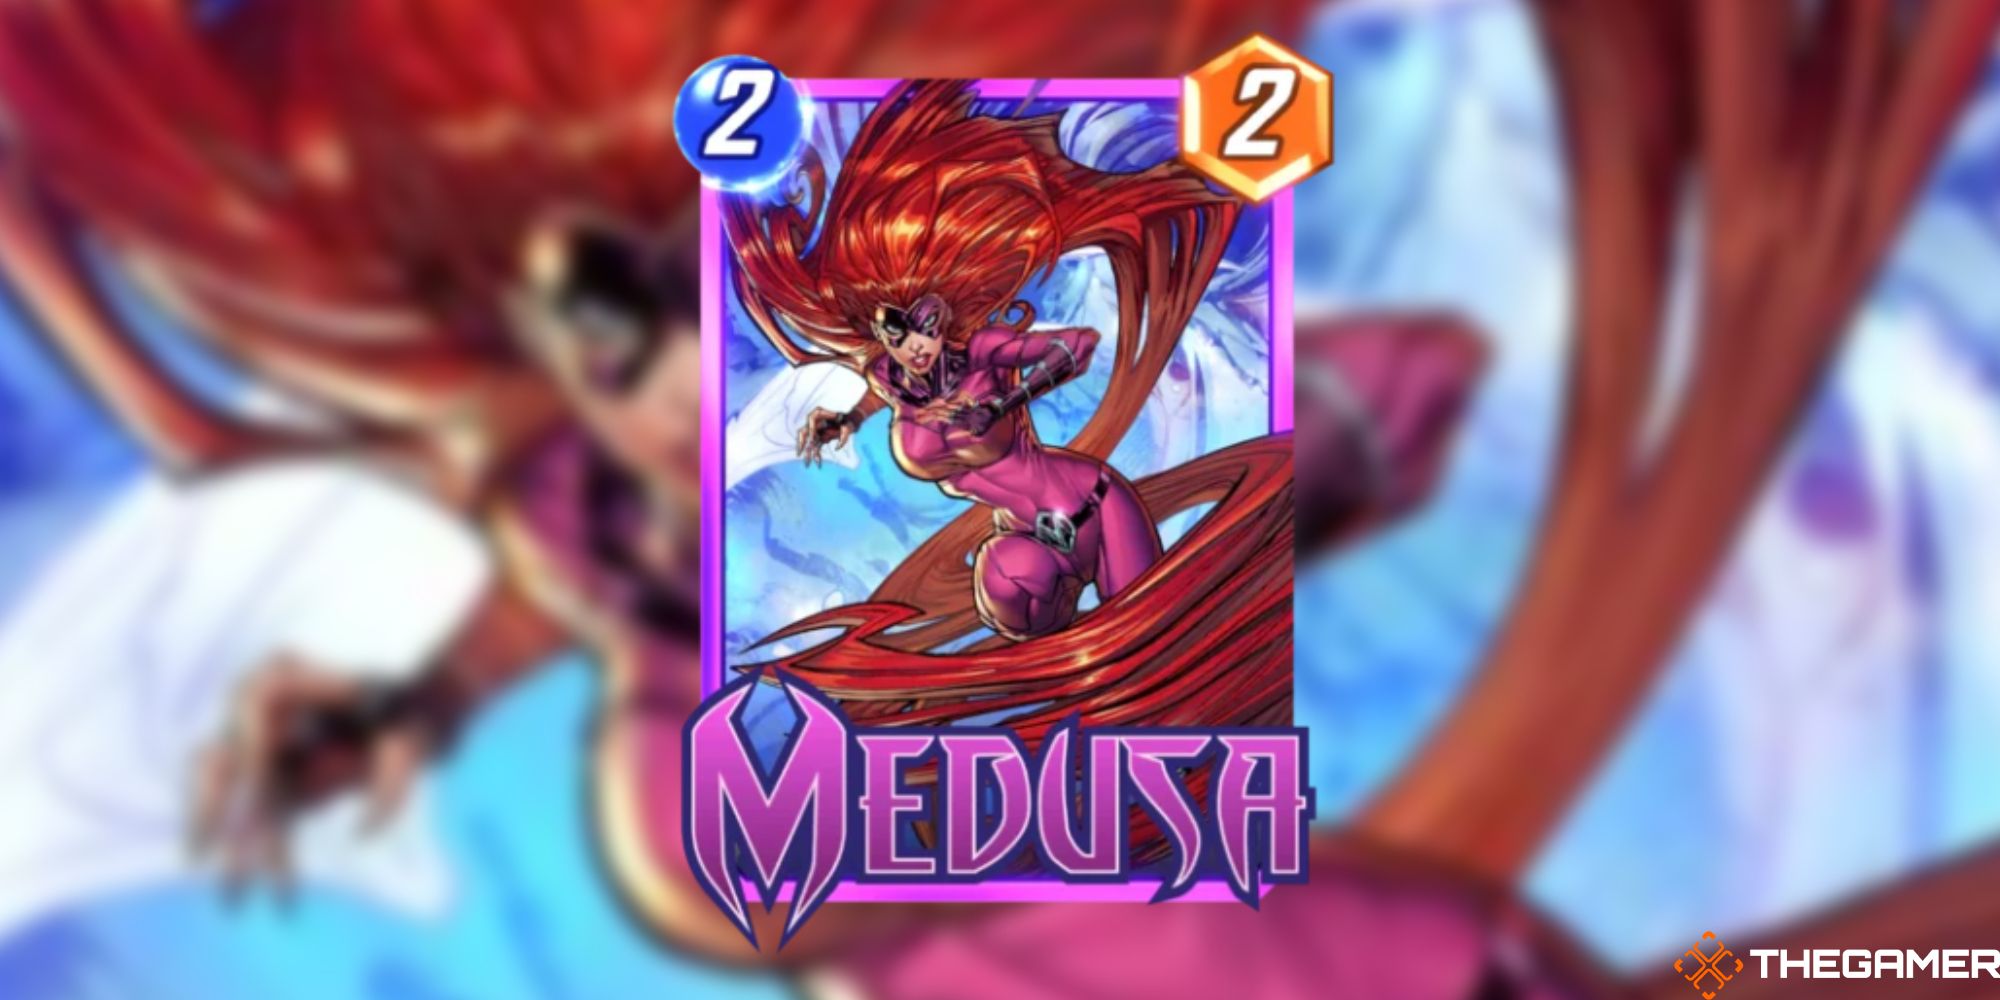 Marvel Snap - Medusa on a blurred background